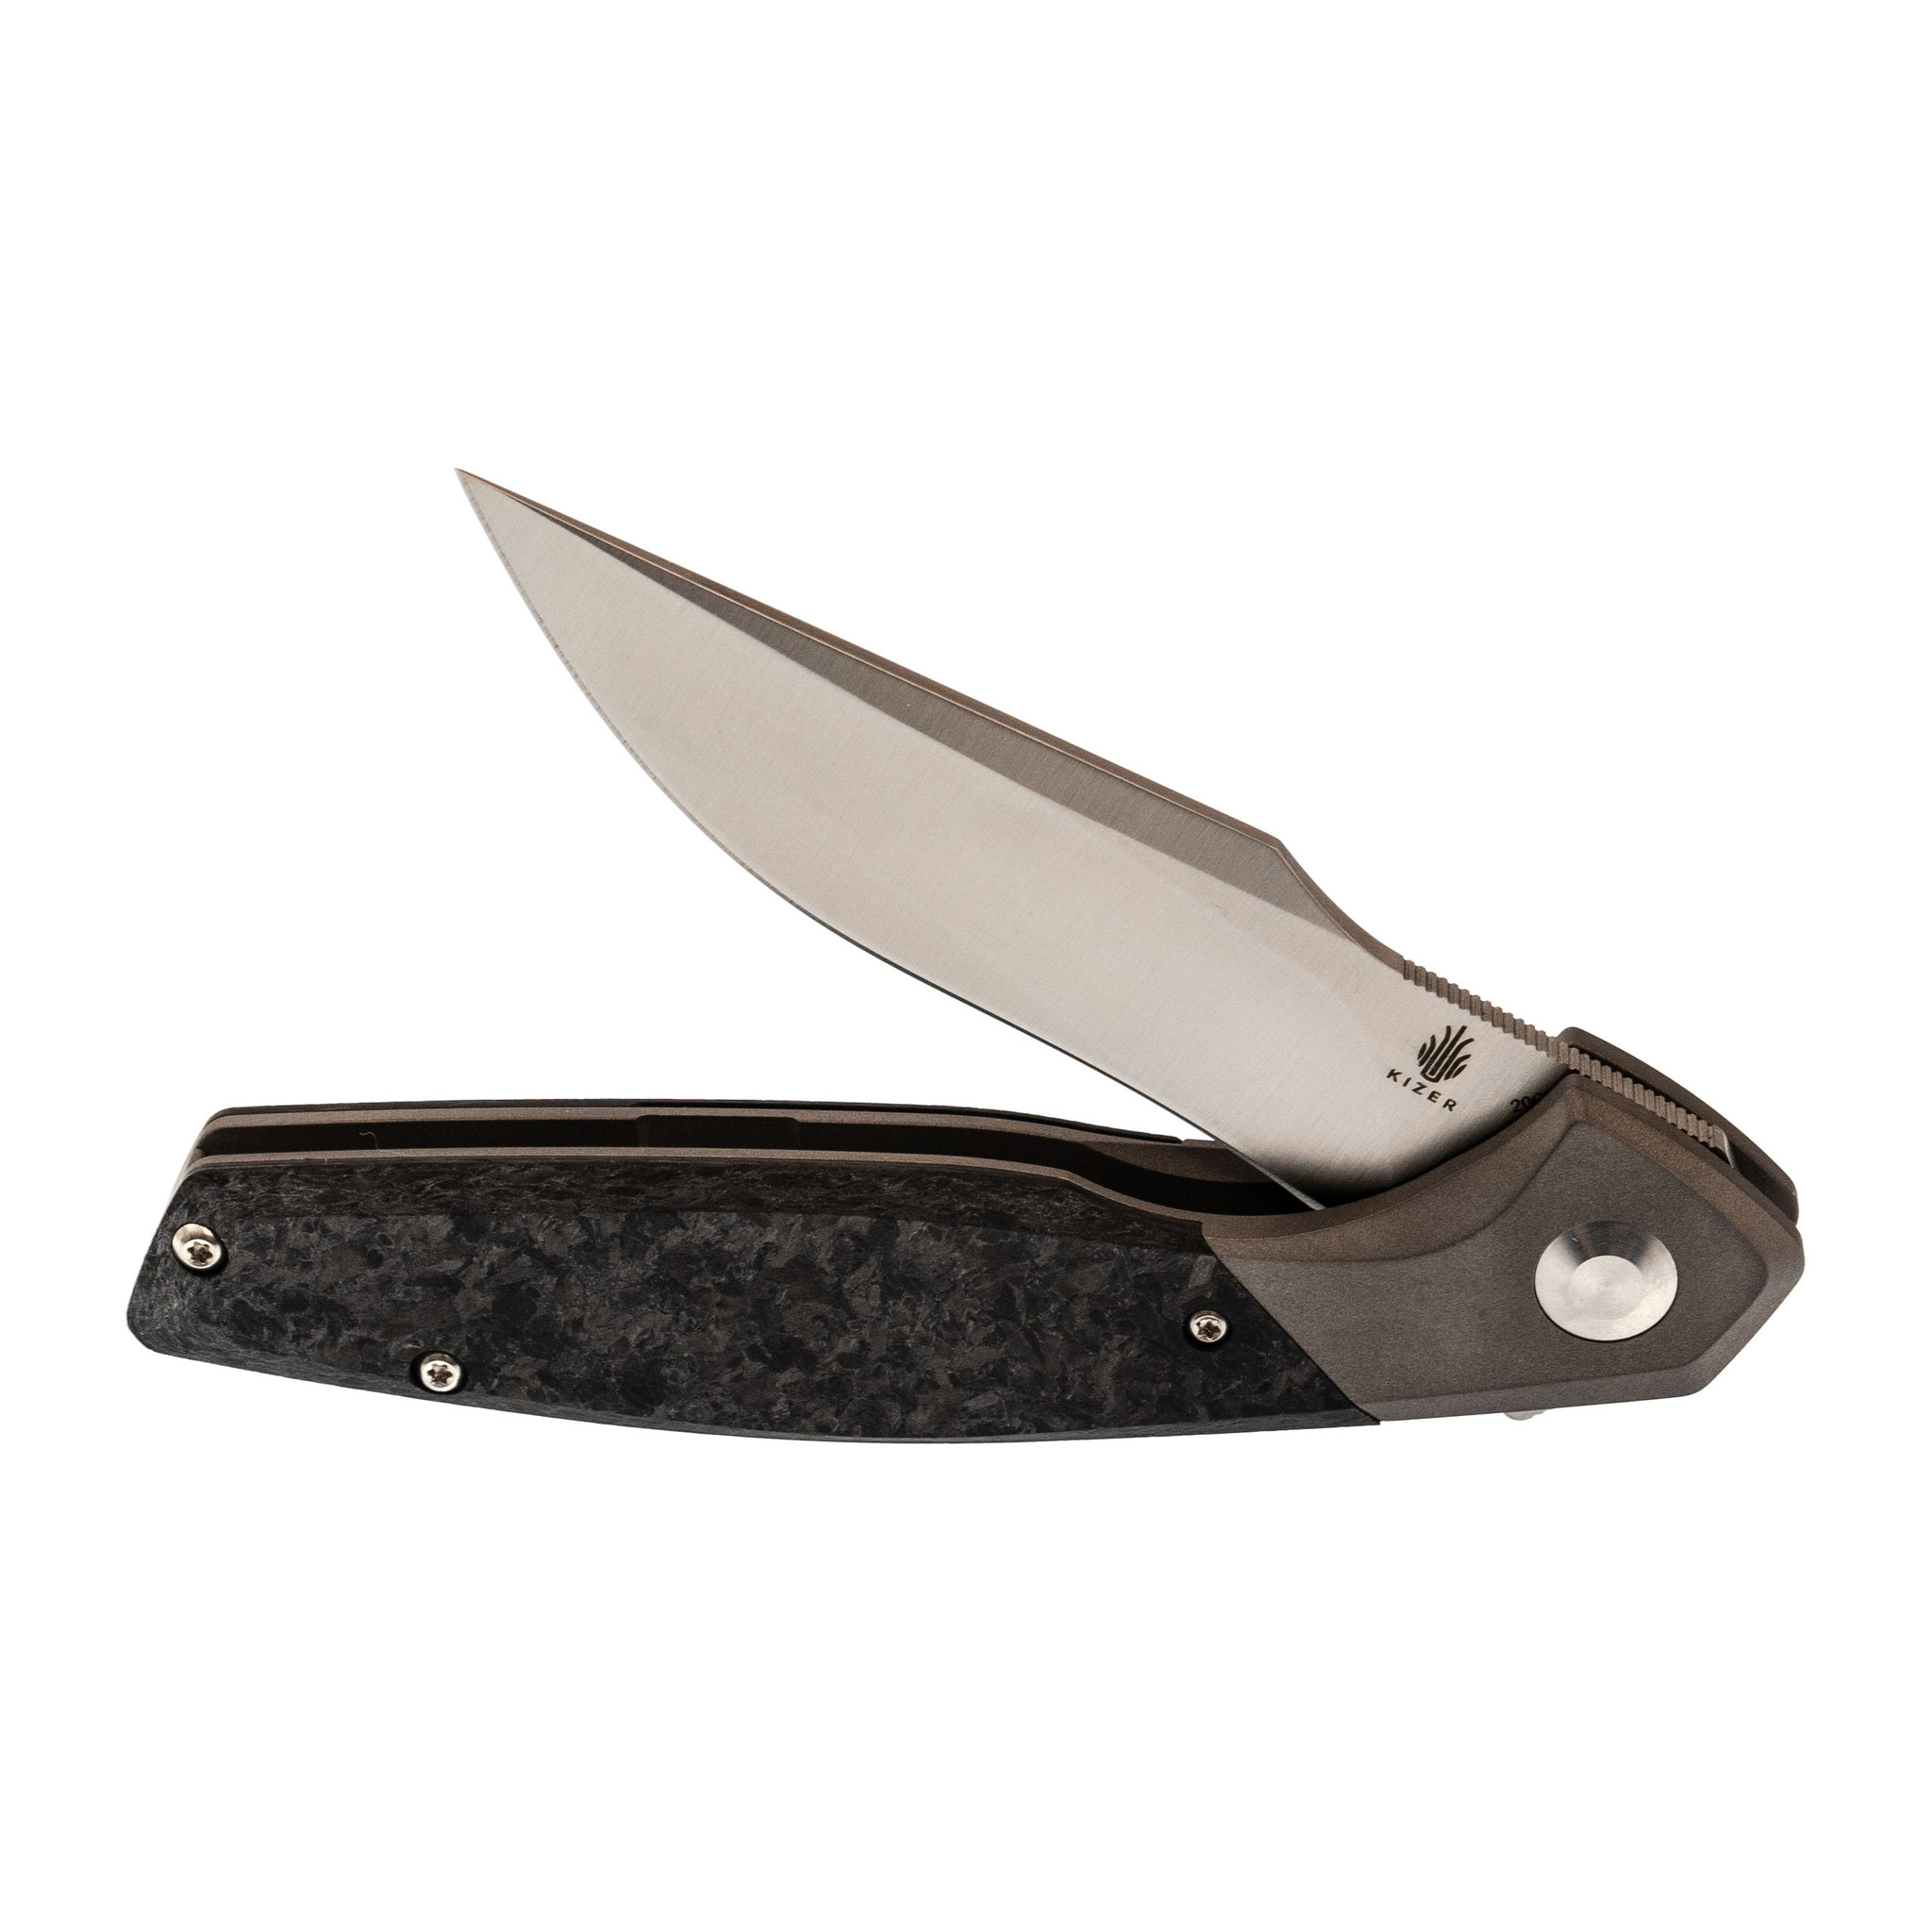 Складной нож Kizer Grazioso, сталь 20CV, рукоять Titanium/carbon fiber - фото 6